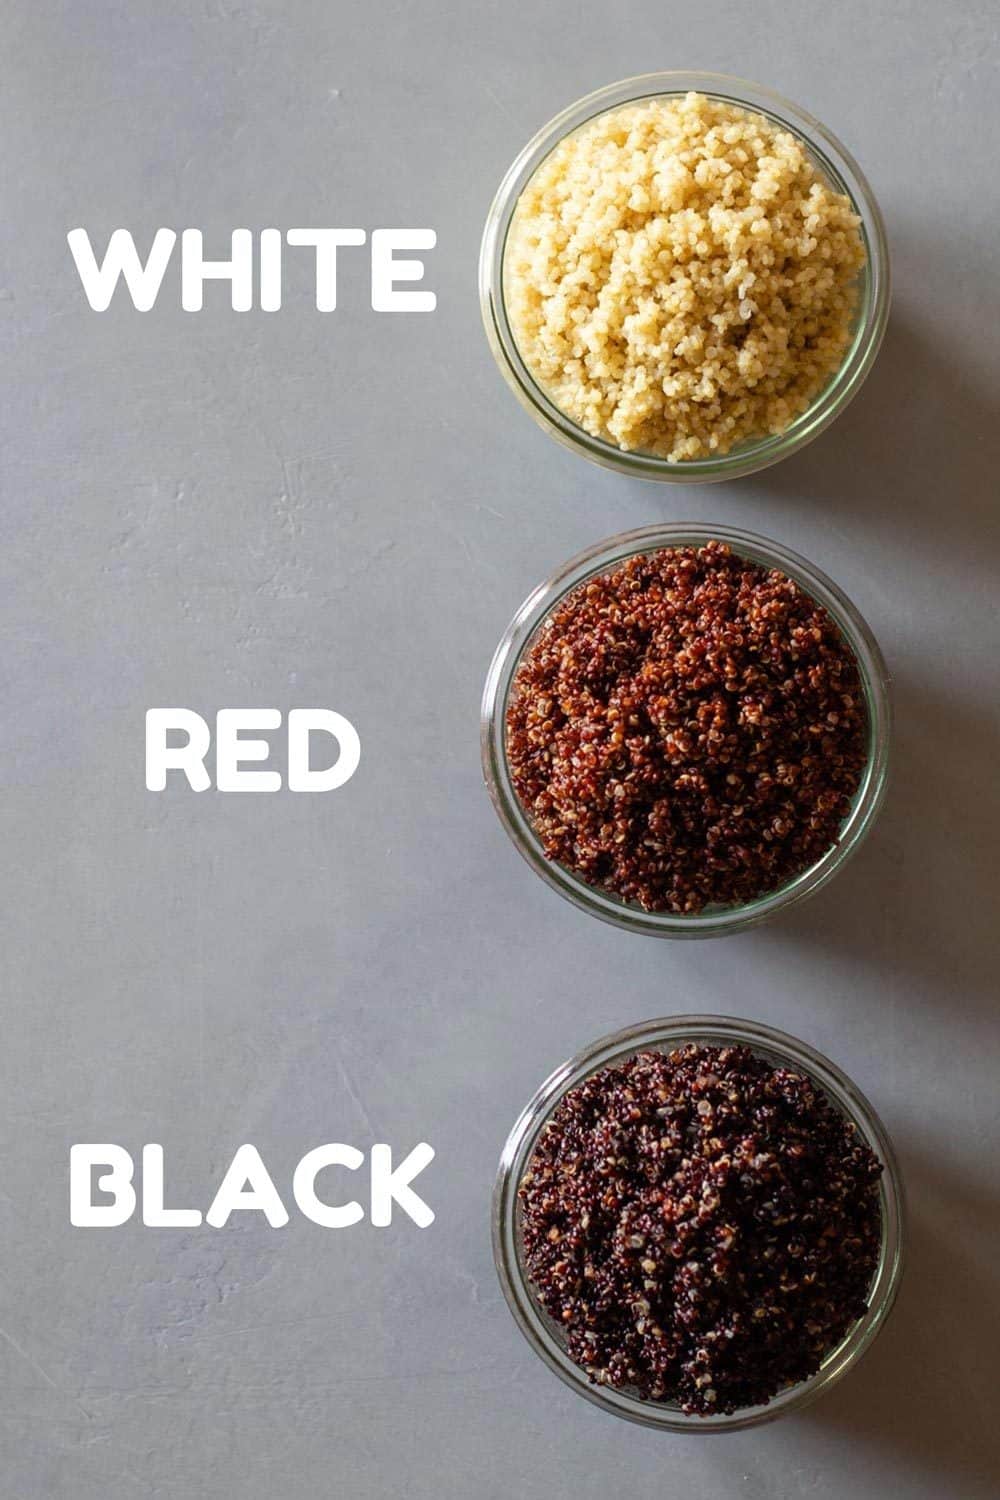 White quinoa, red quinoa, and black quinoa in bowls.